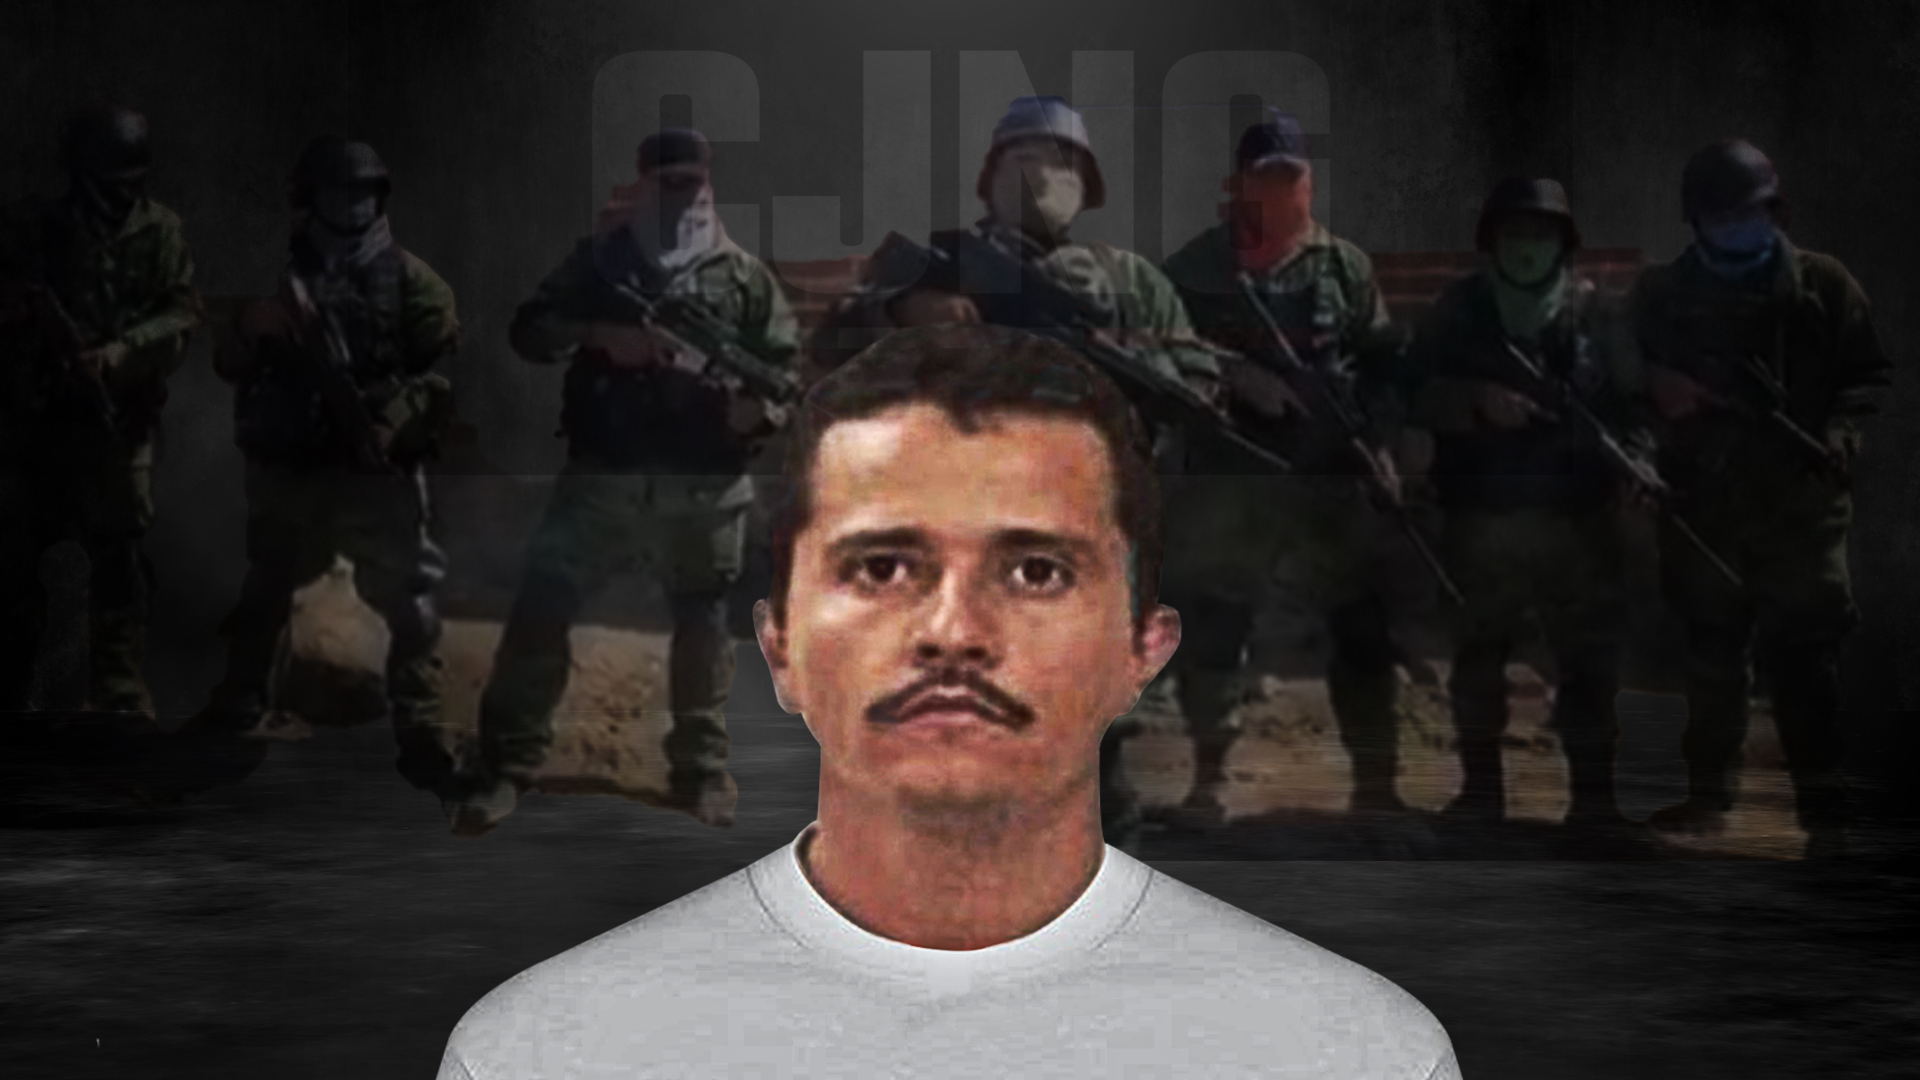 El Mencho del CJNG es uno de los capos más buscados por autoridades de México y EEUU (Fotoarte: Steve Allen)